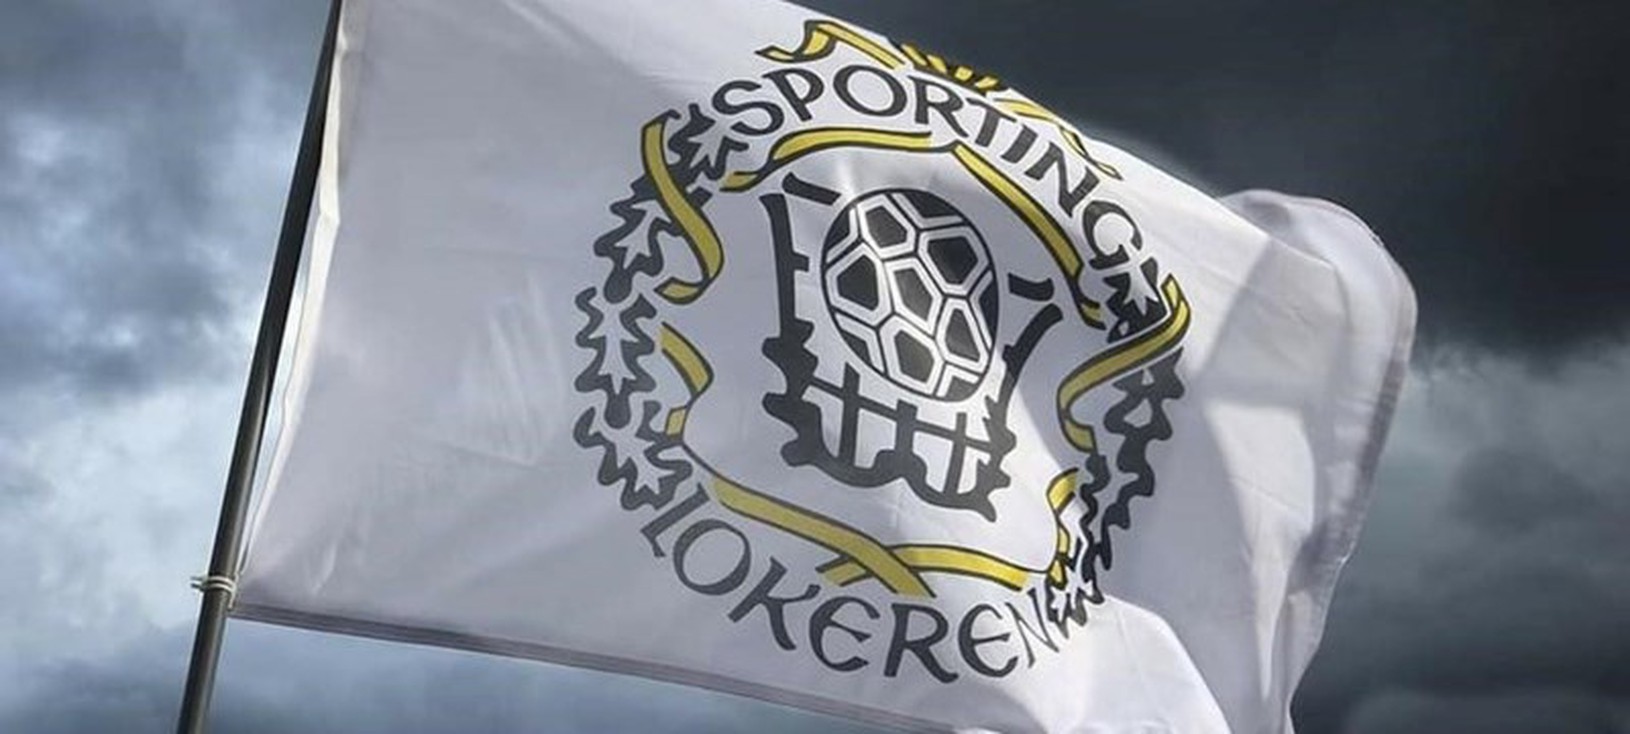 Logo klubu KSC Lokeren